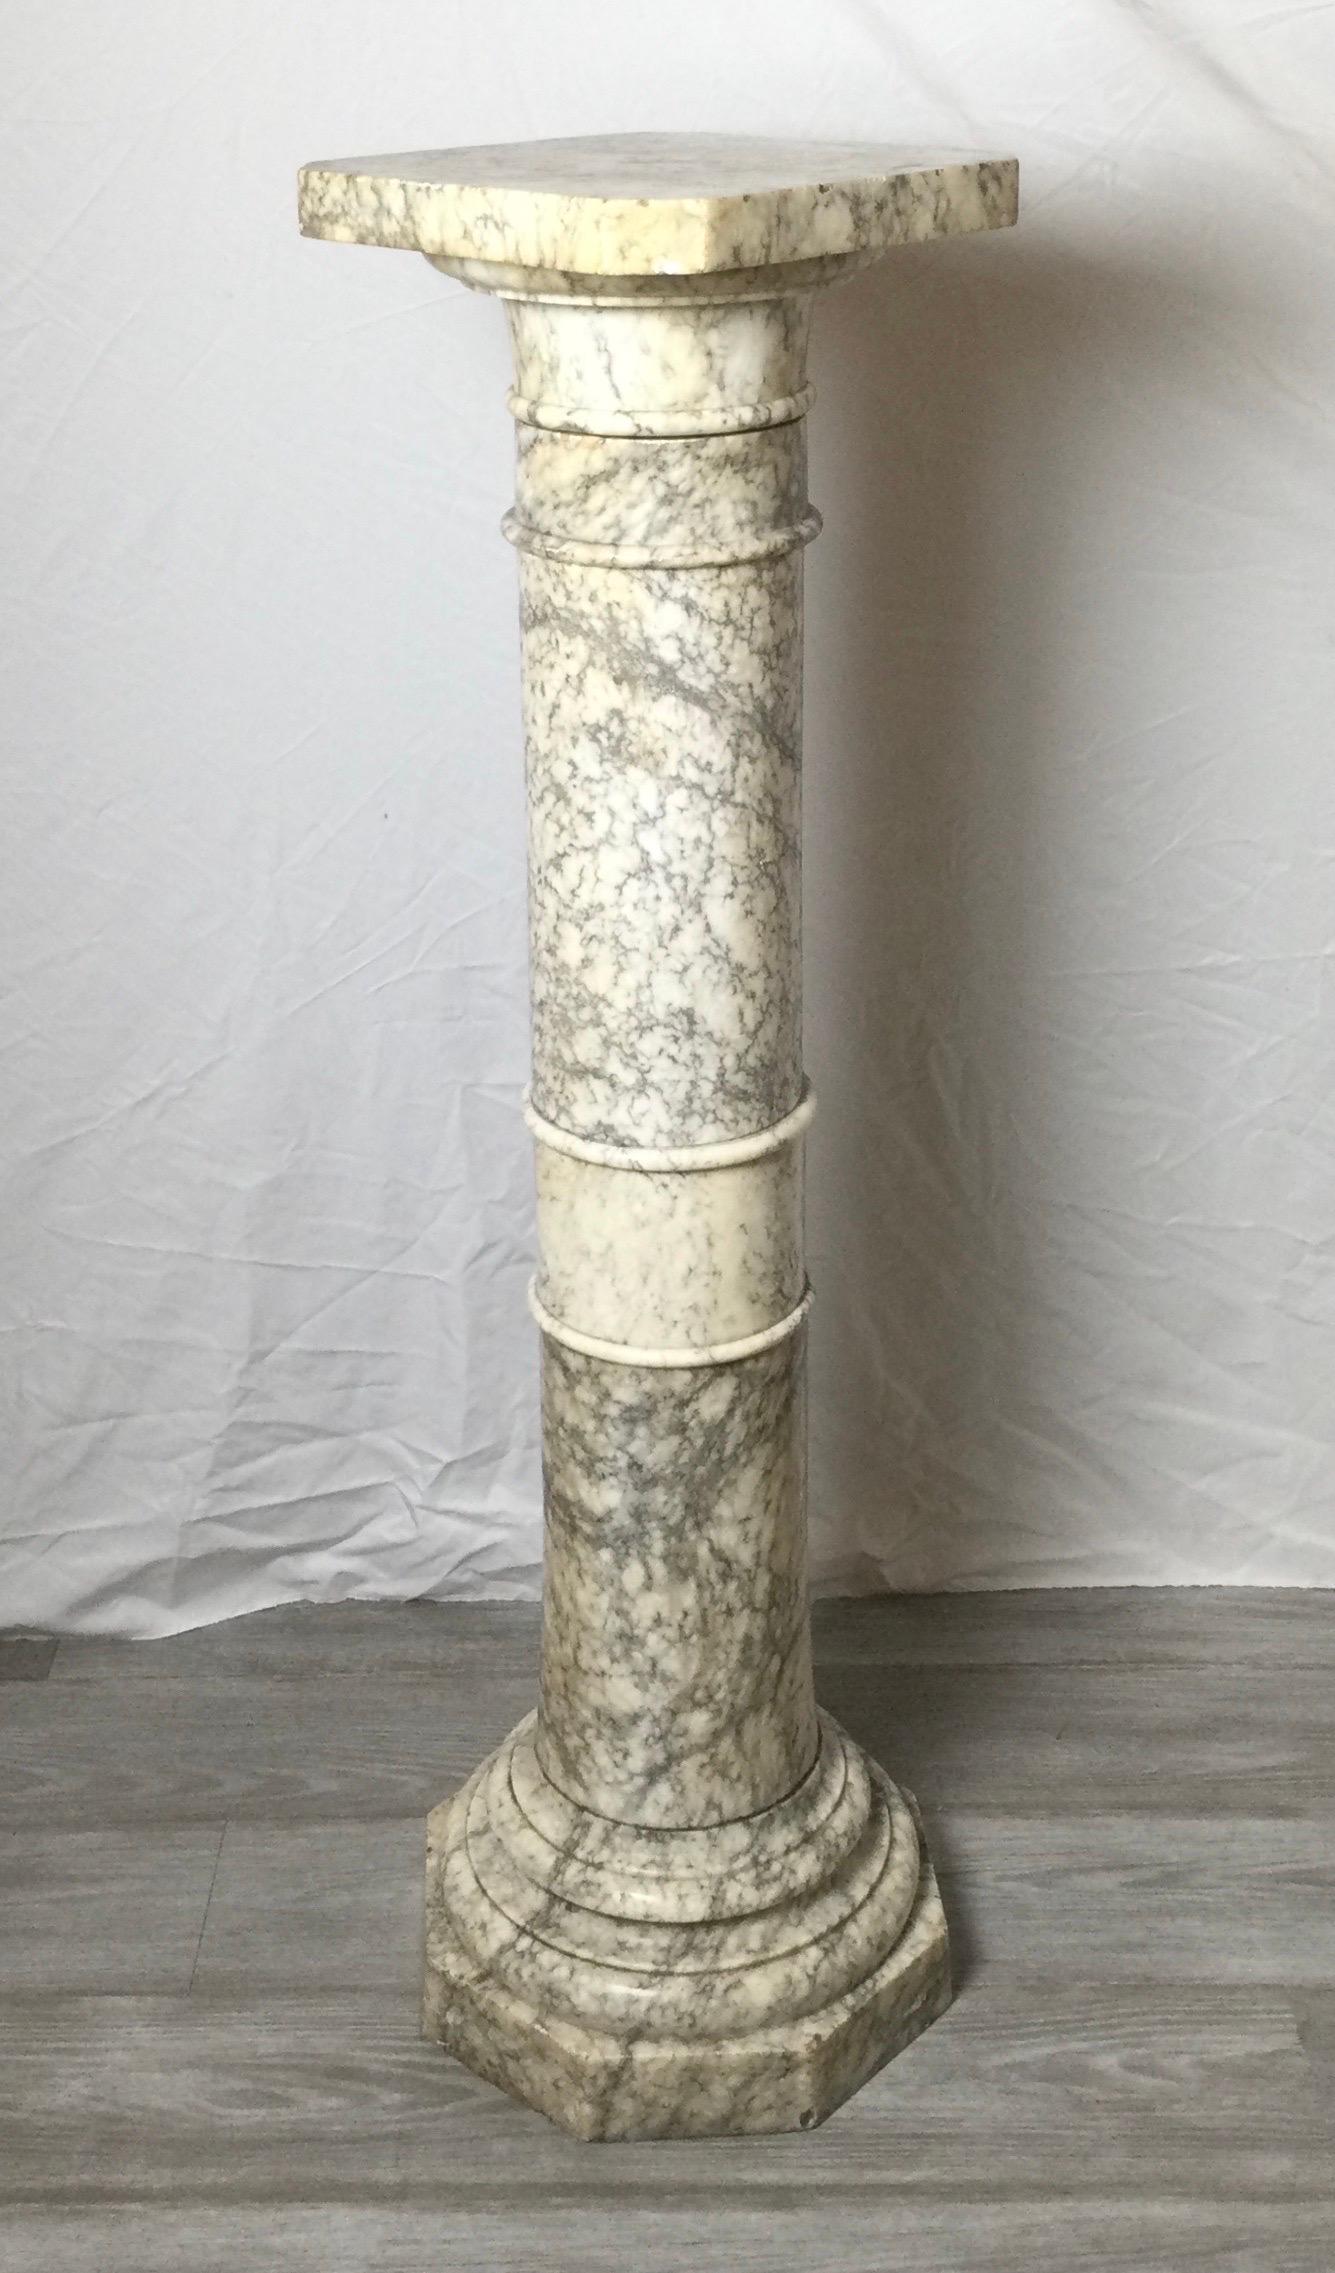 Massiver italienischer Marmorsockel aus dem frühen 20. Jahrhundert. Die Säulenform mit quadratischem Aufsatz, der gedreht werden kann, um eine Skulptur von jeder Seite zu betrachten. Der weiße Marmor mit schwarzer und grauer Maserung. Leichte